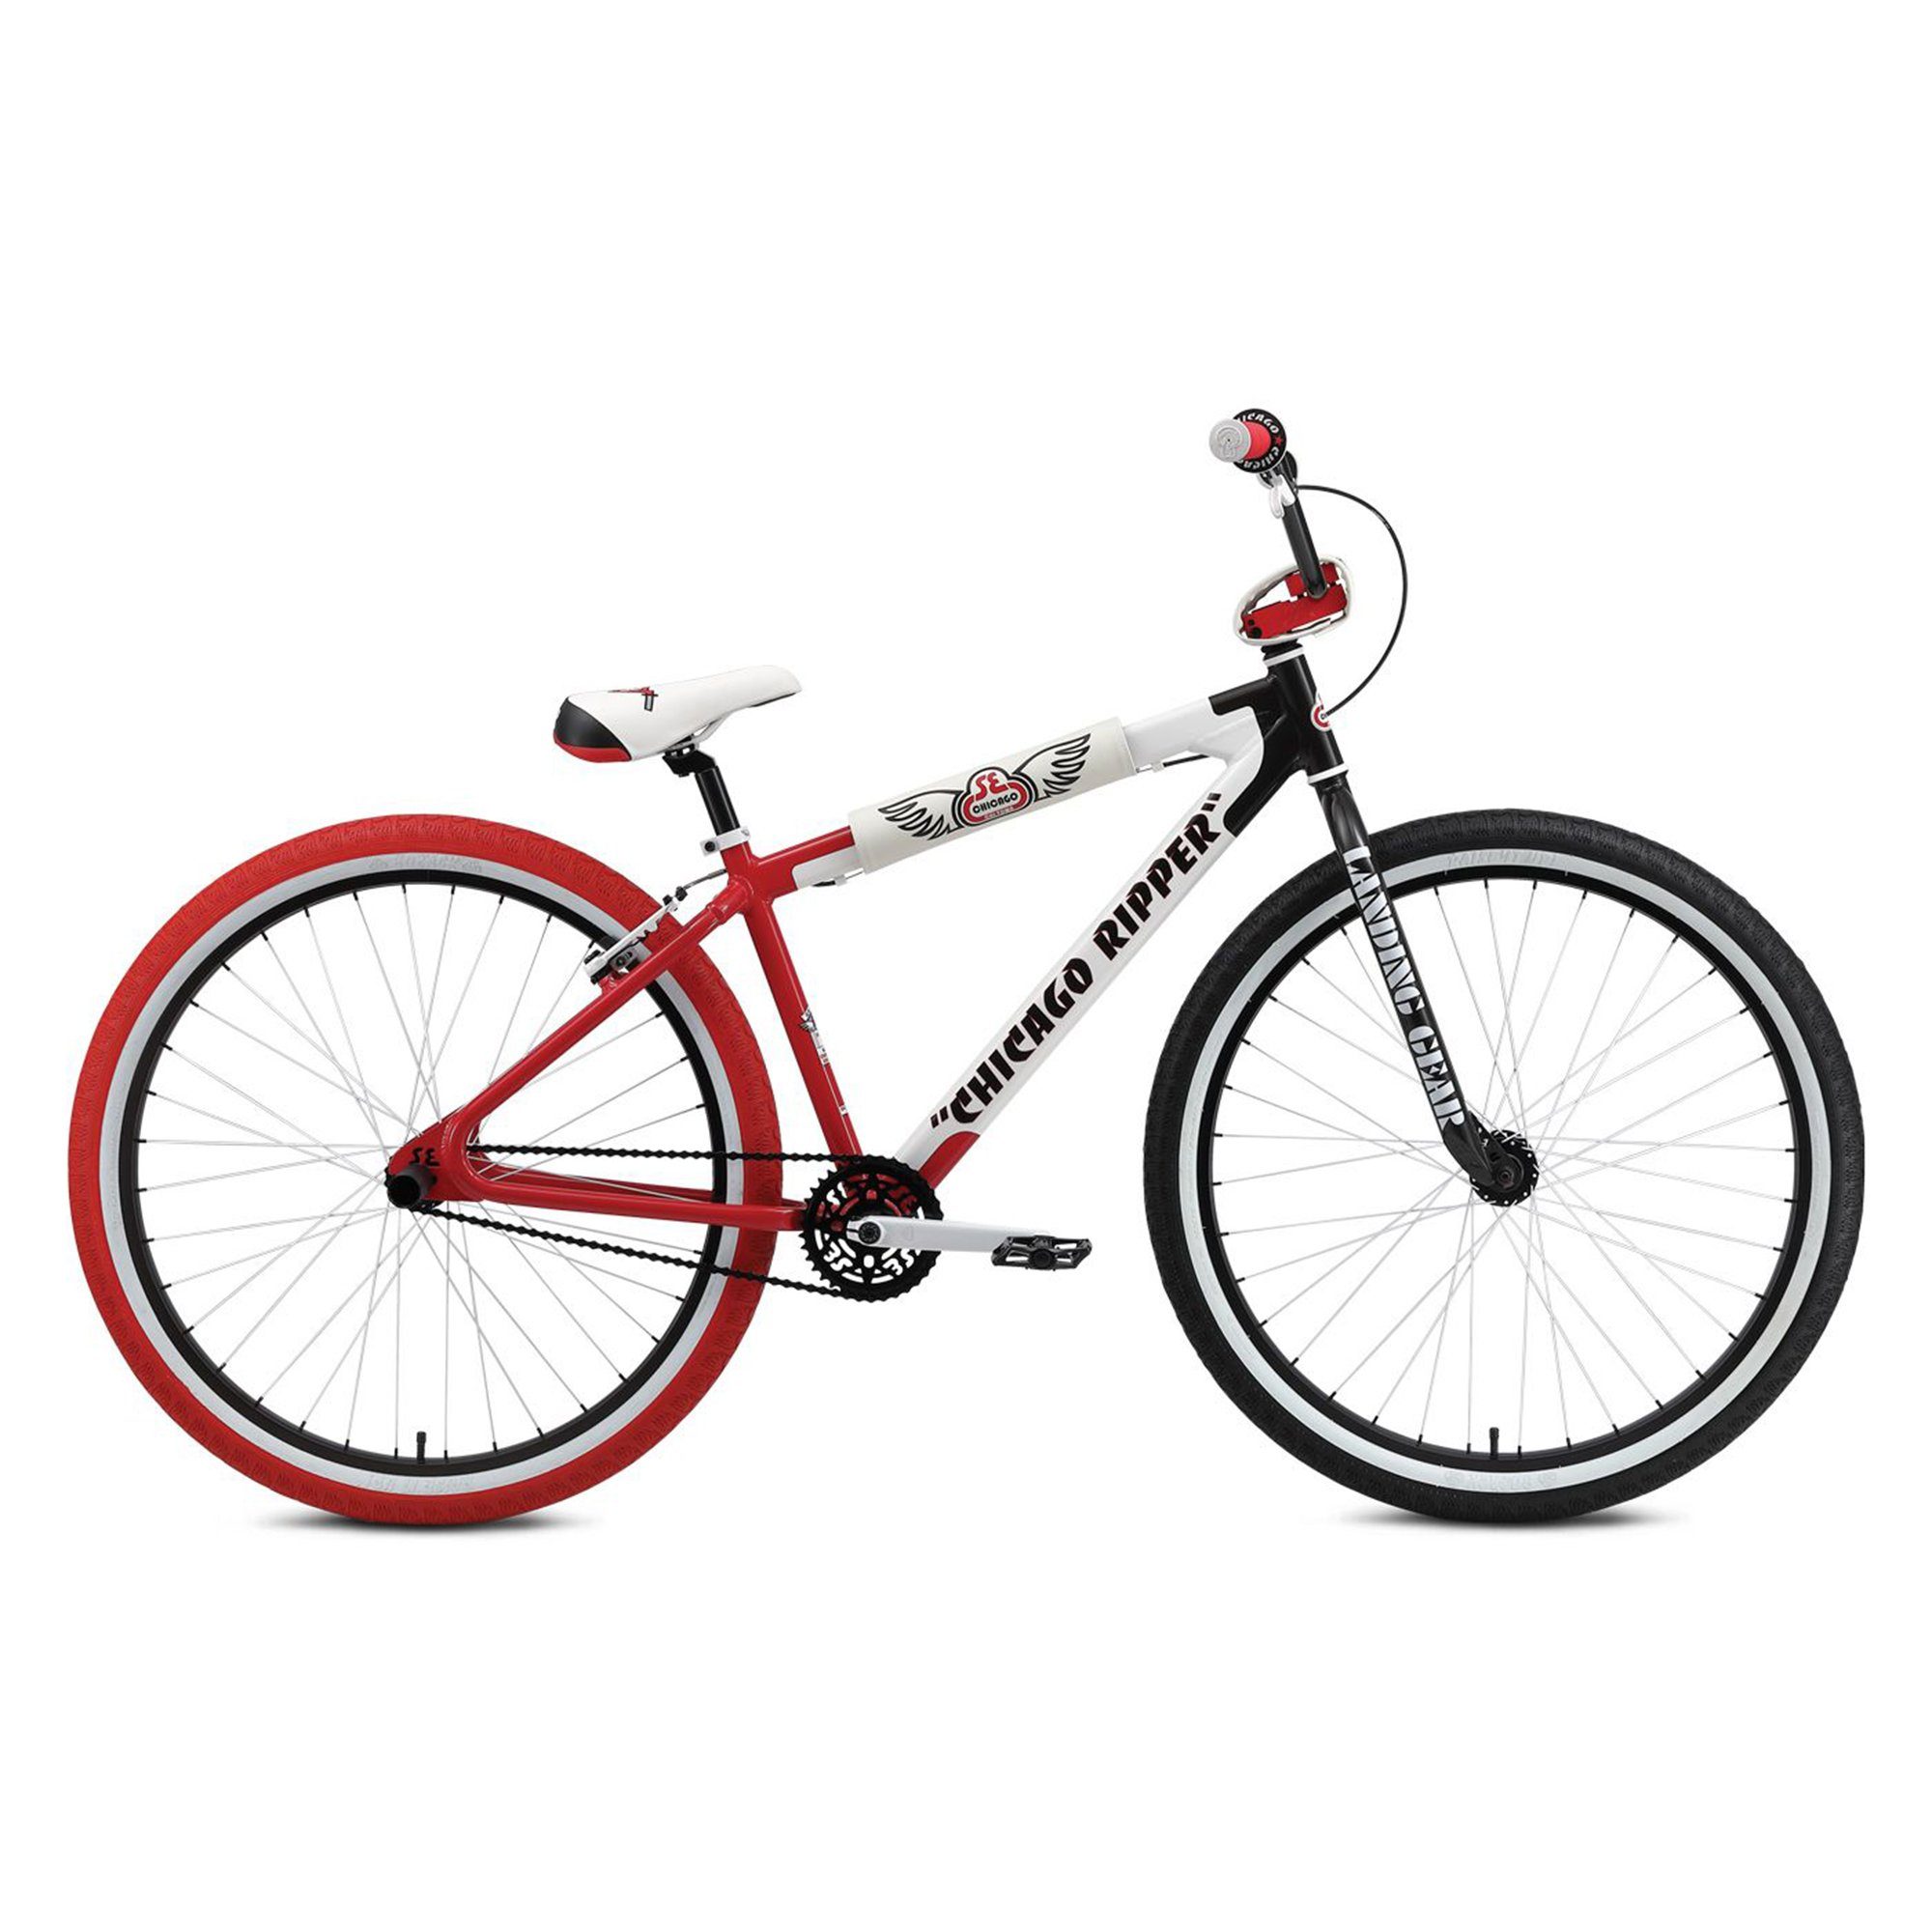 SE Bikes 2021, Chicago Jugendliche 1 Ripper Wheelie Schaltung, Rad Stuntbike ohne Zoll BMX Bike Big BMX-Rad Fahrrad Gang, Erwachsene 29